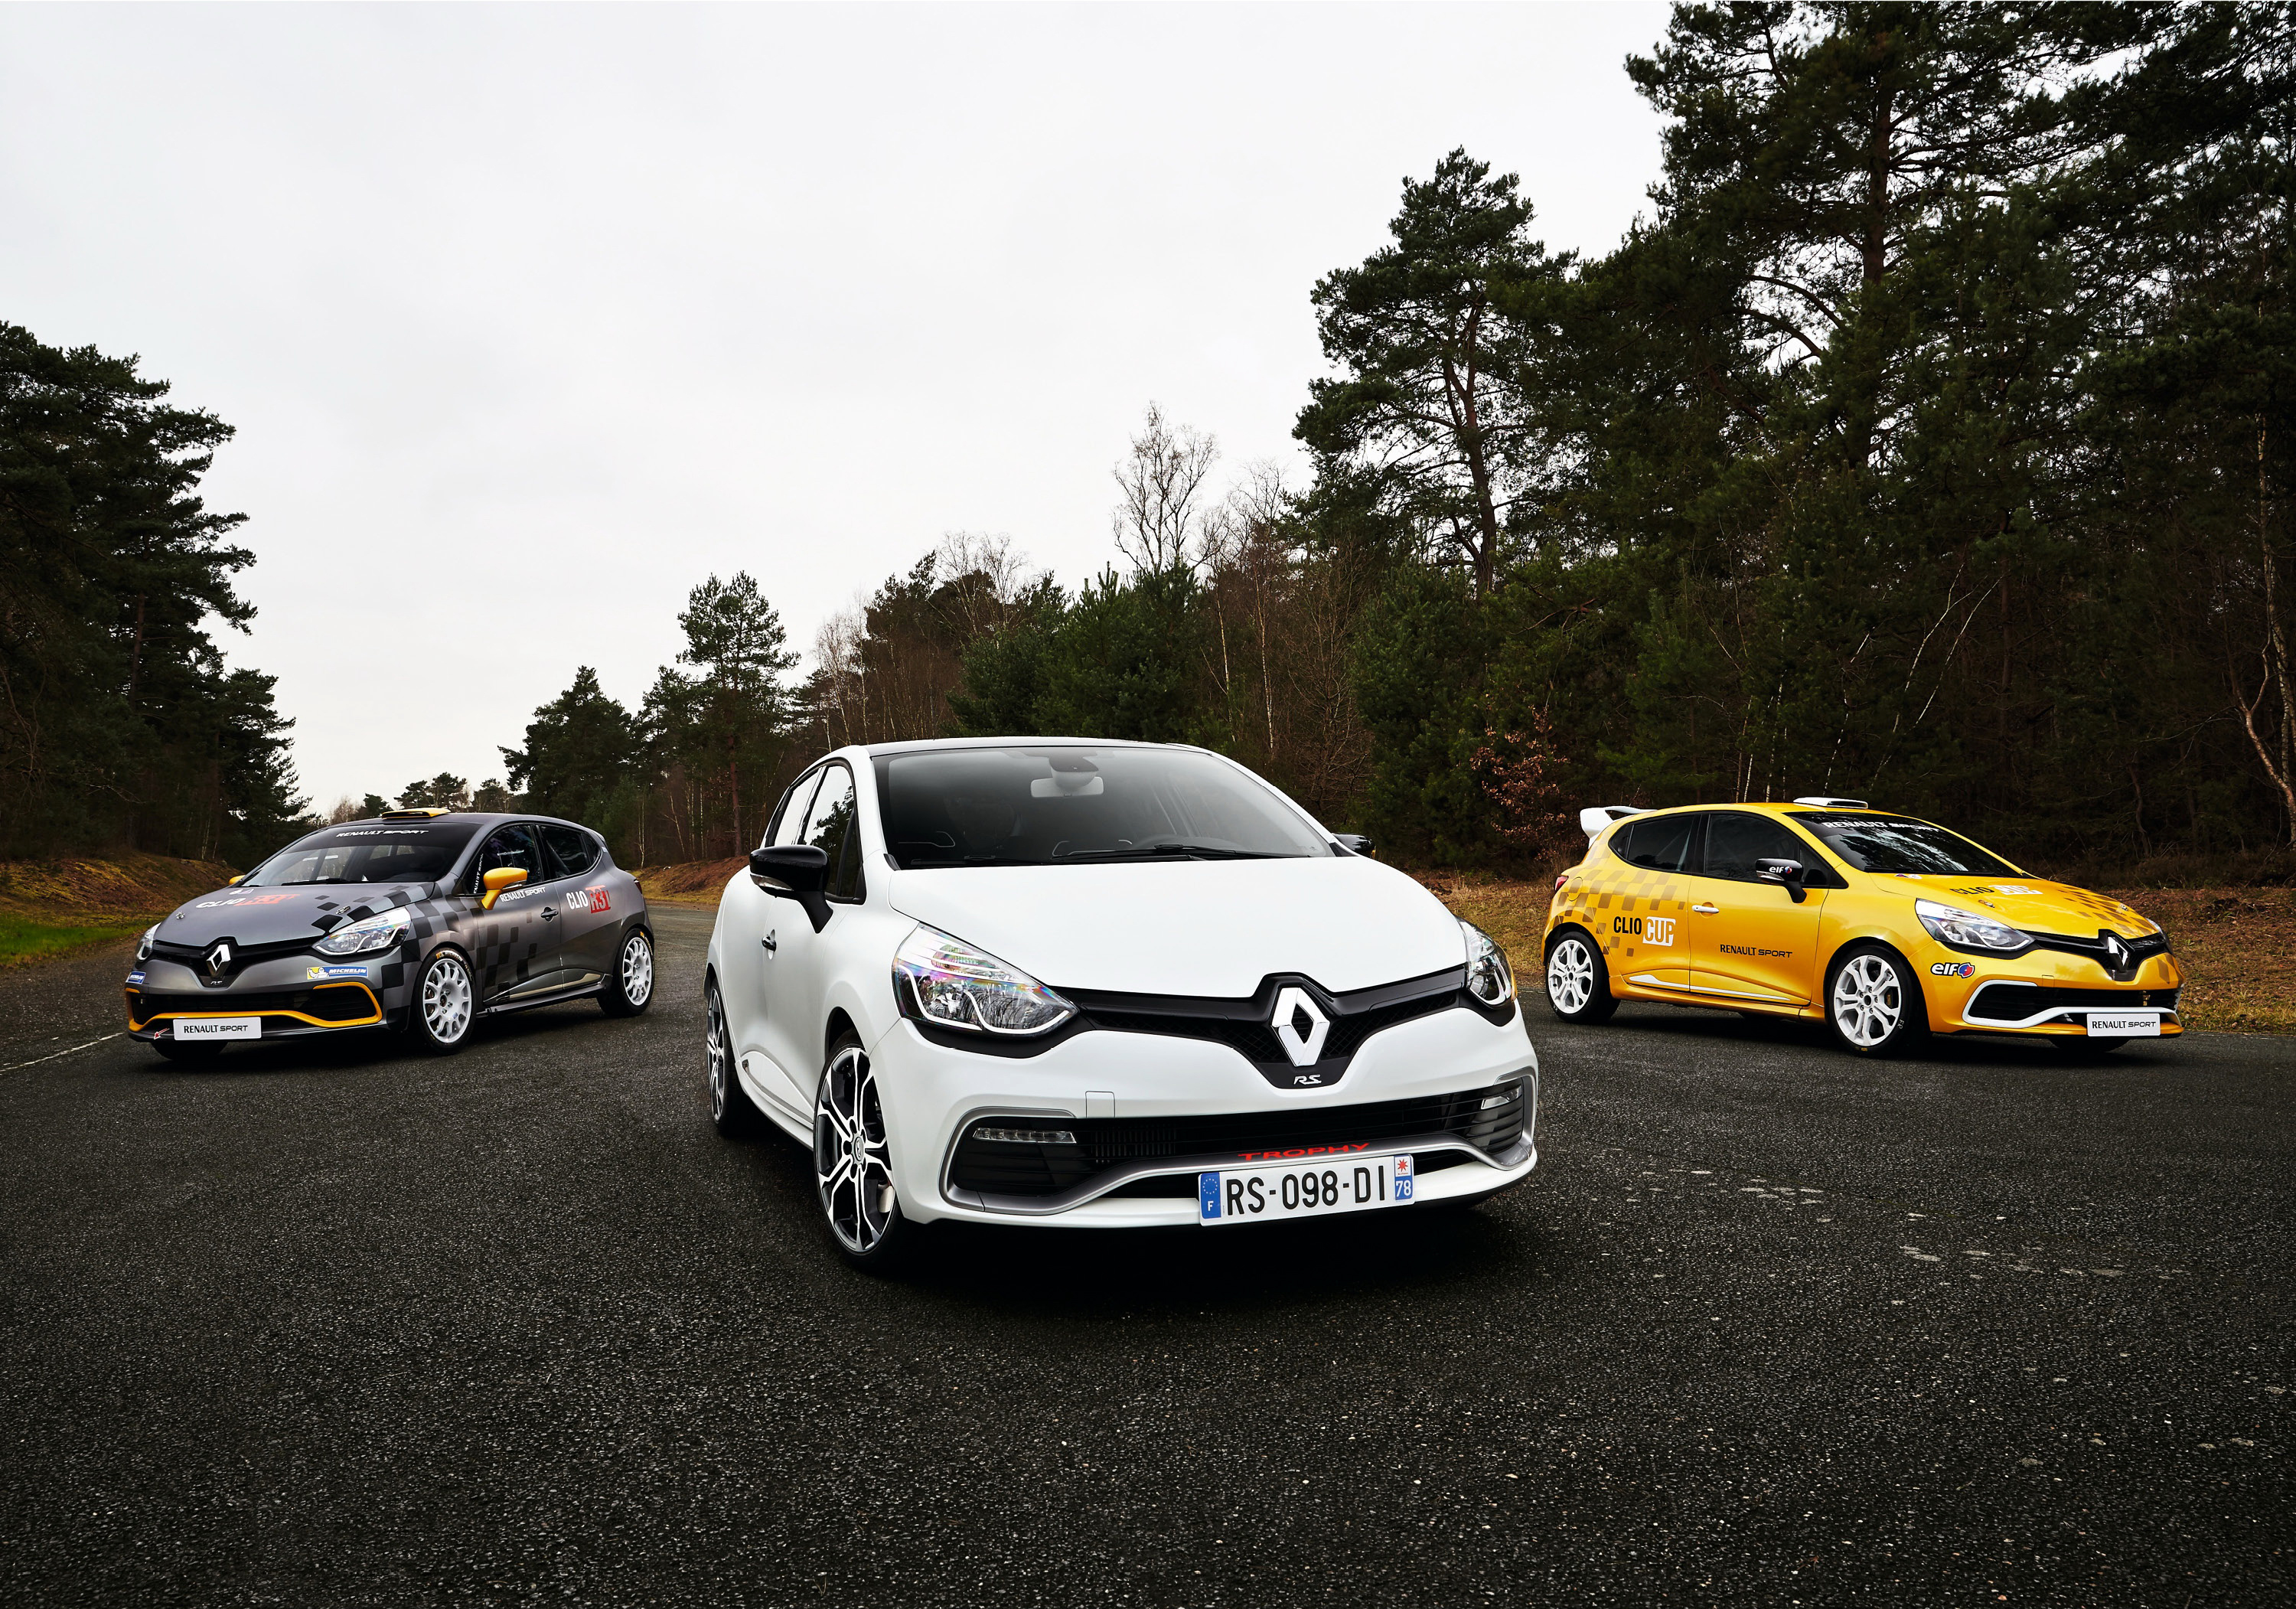 Renault tuning